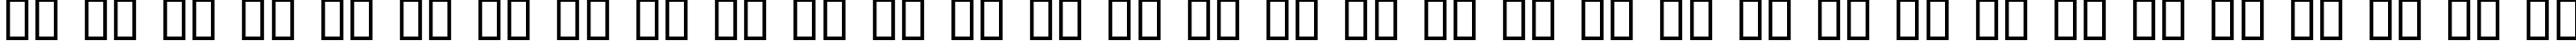 Пример написания русского алфавита шрифтом Alpha Sentry